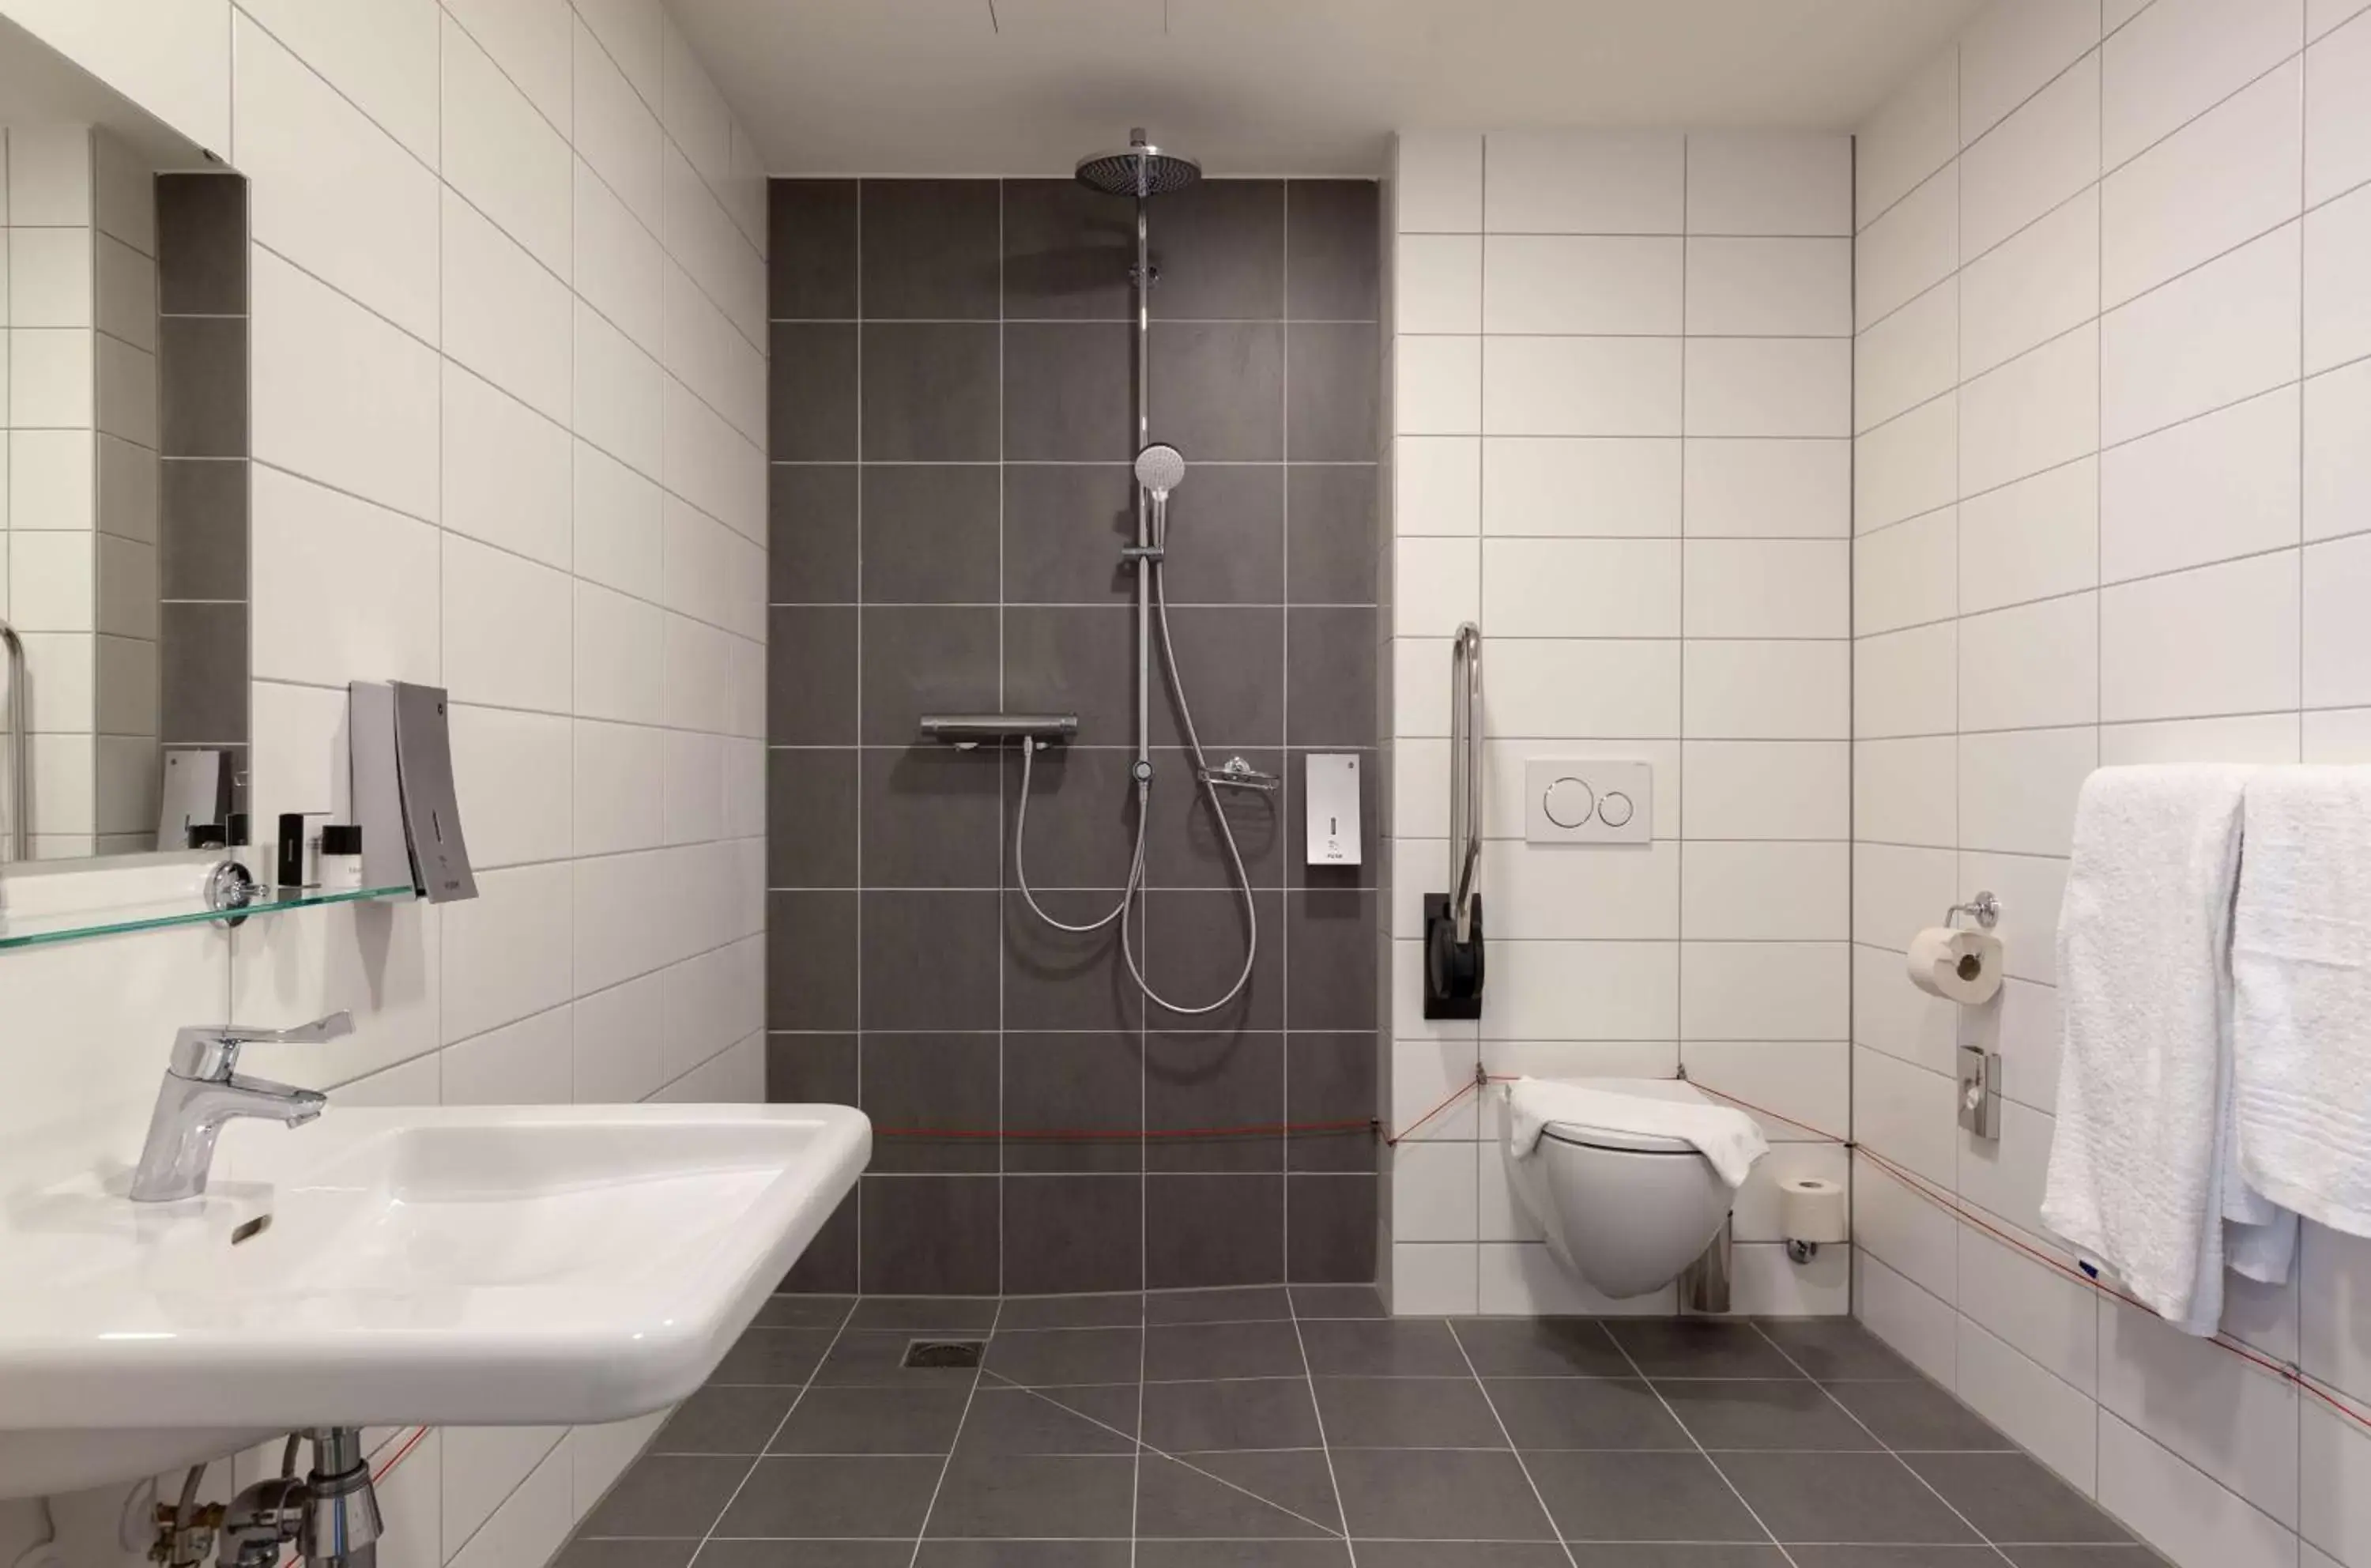 Photo of the whole room, Bathroom in Best Western Plus Hotel Amstelveen